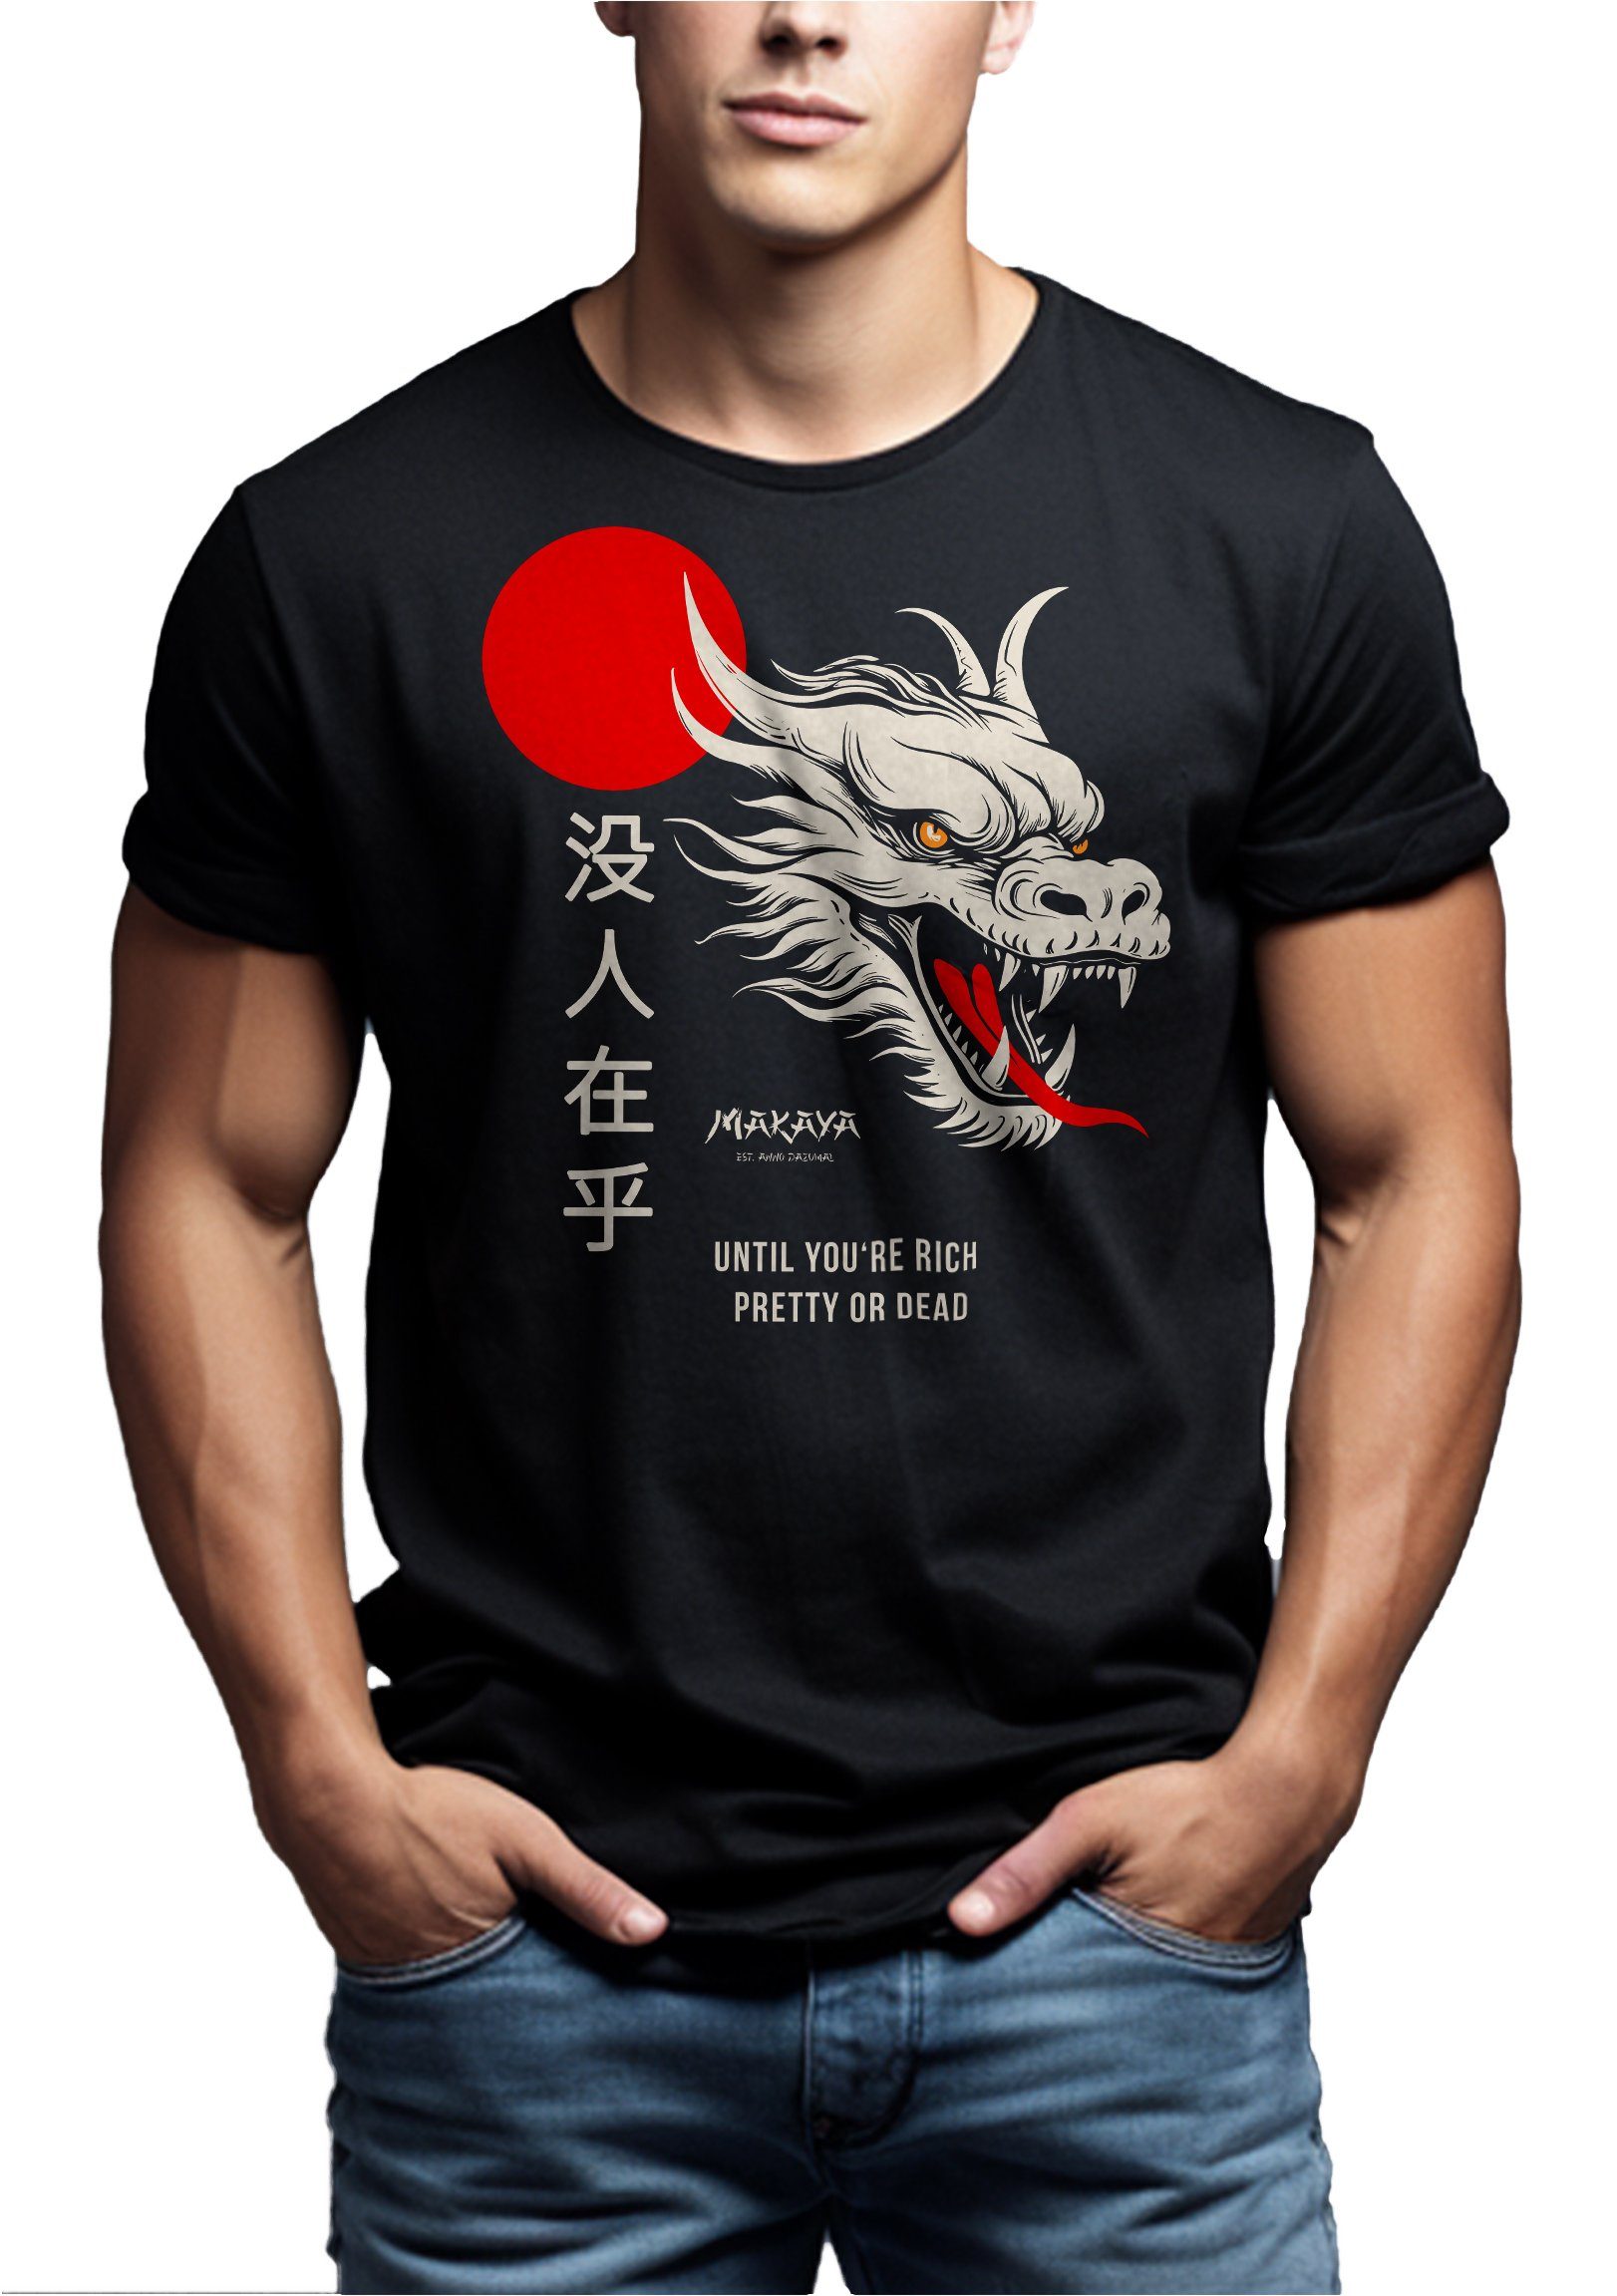 MAKAYA Print-Shirt mit Chinesischen Drachen Spruch Schriftzeichen Cares Geschenke Schwarz Dragon Coole Nobody